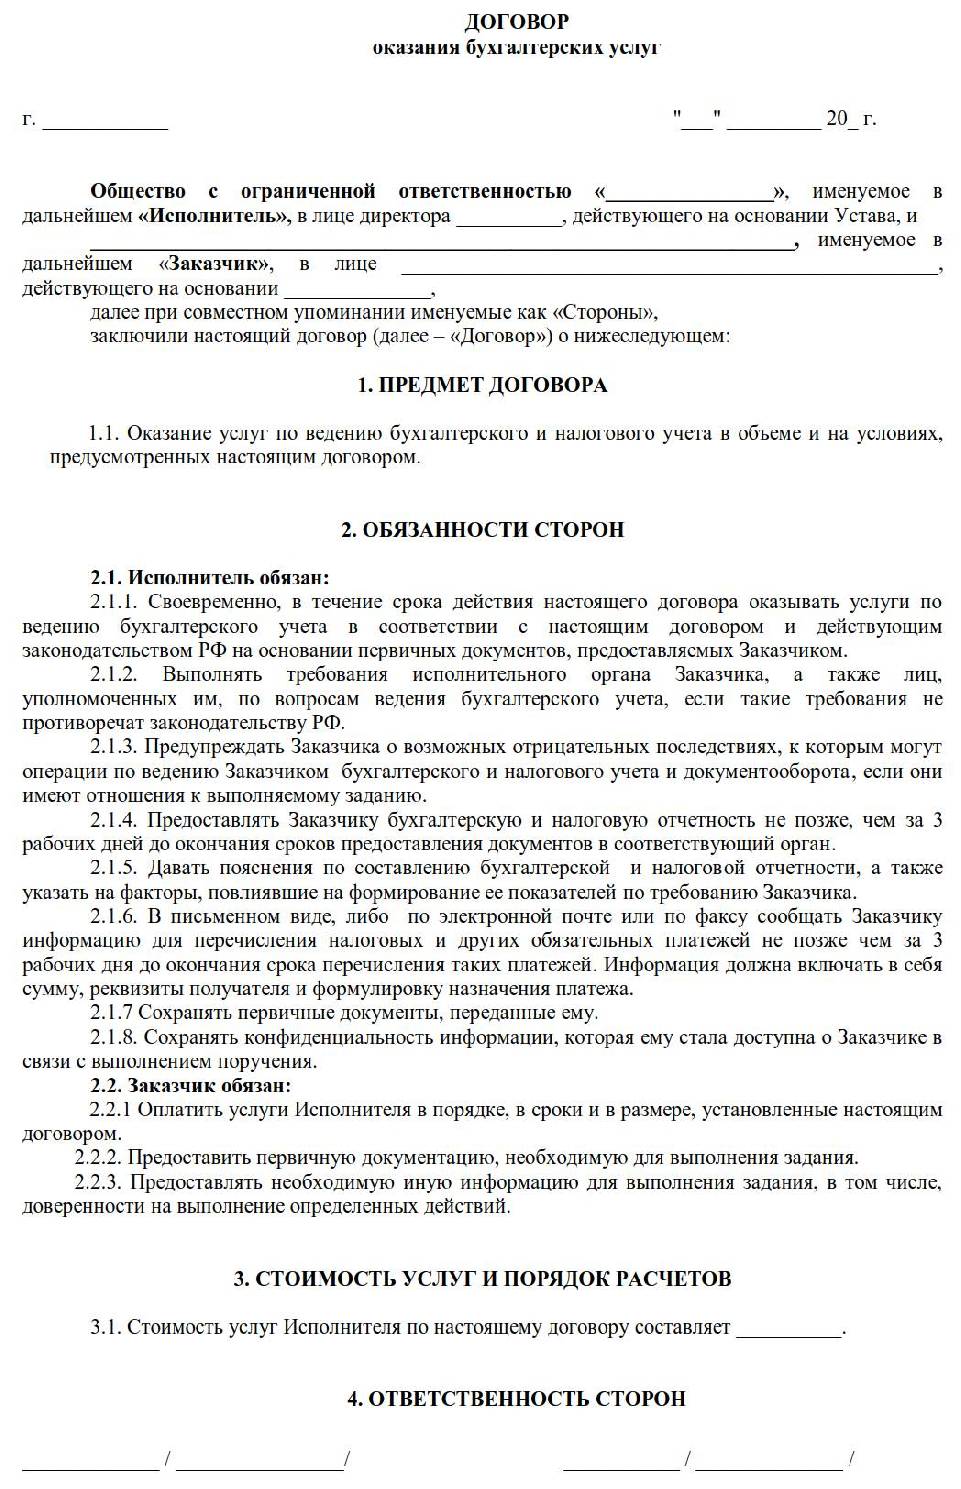 Договор на оказание бухгалтерских услуг образец украина